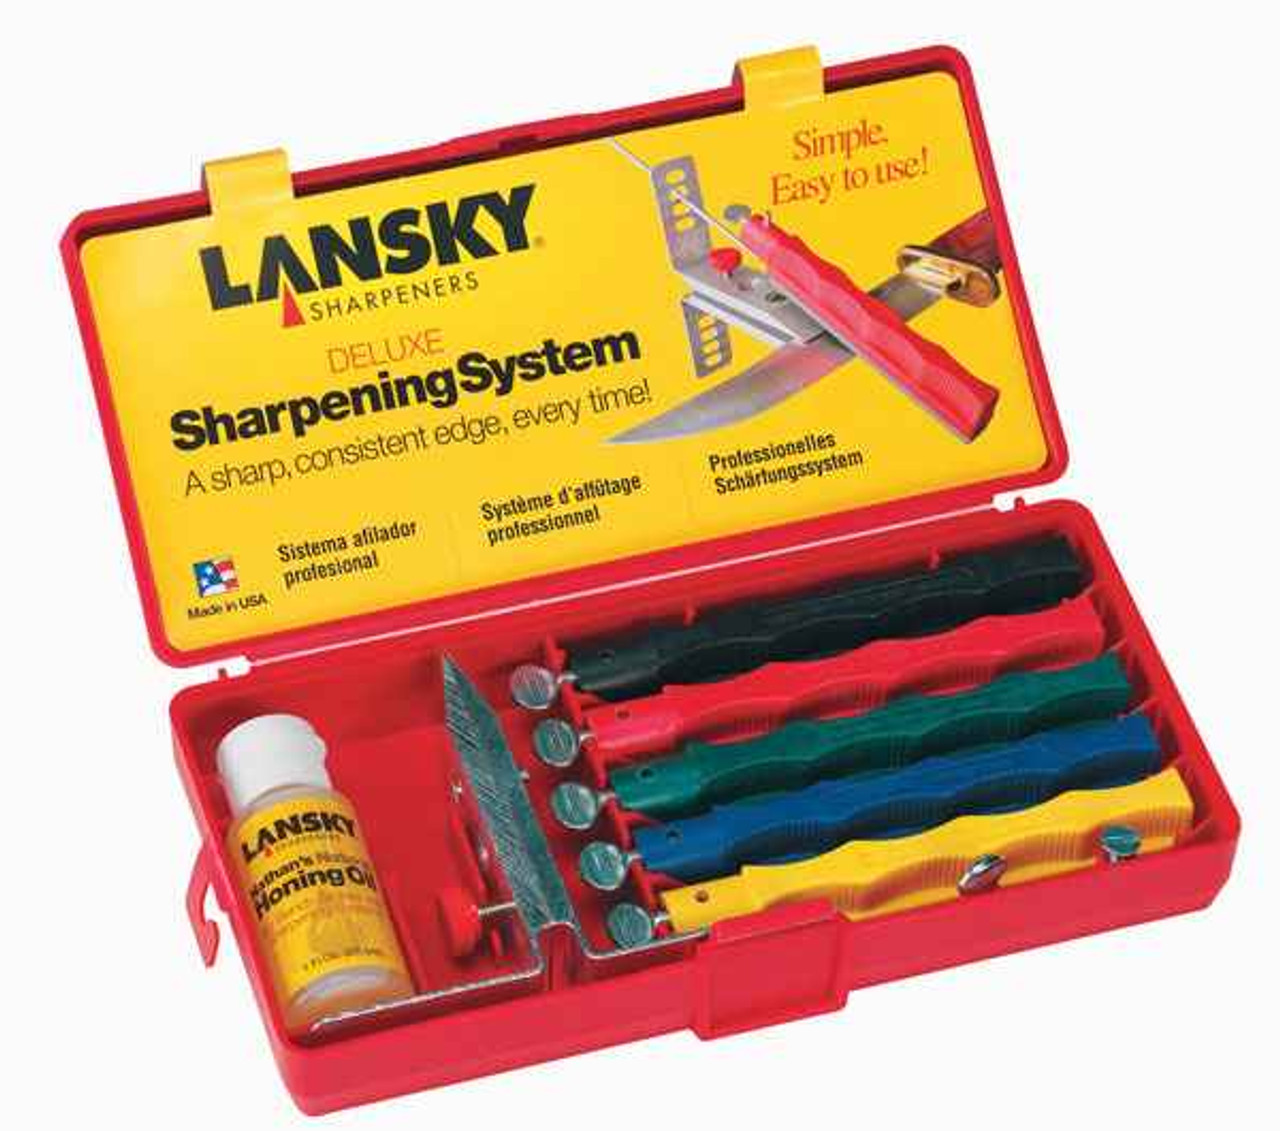 Lansky Deluxe Sharpening System, LKCLX